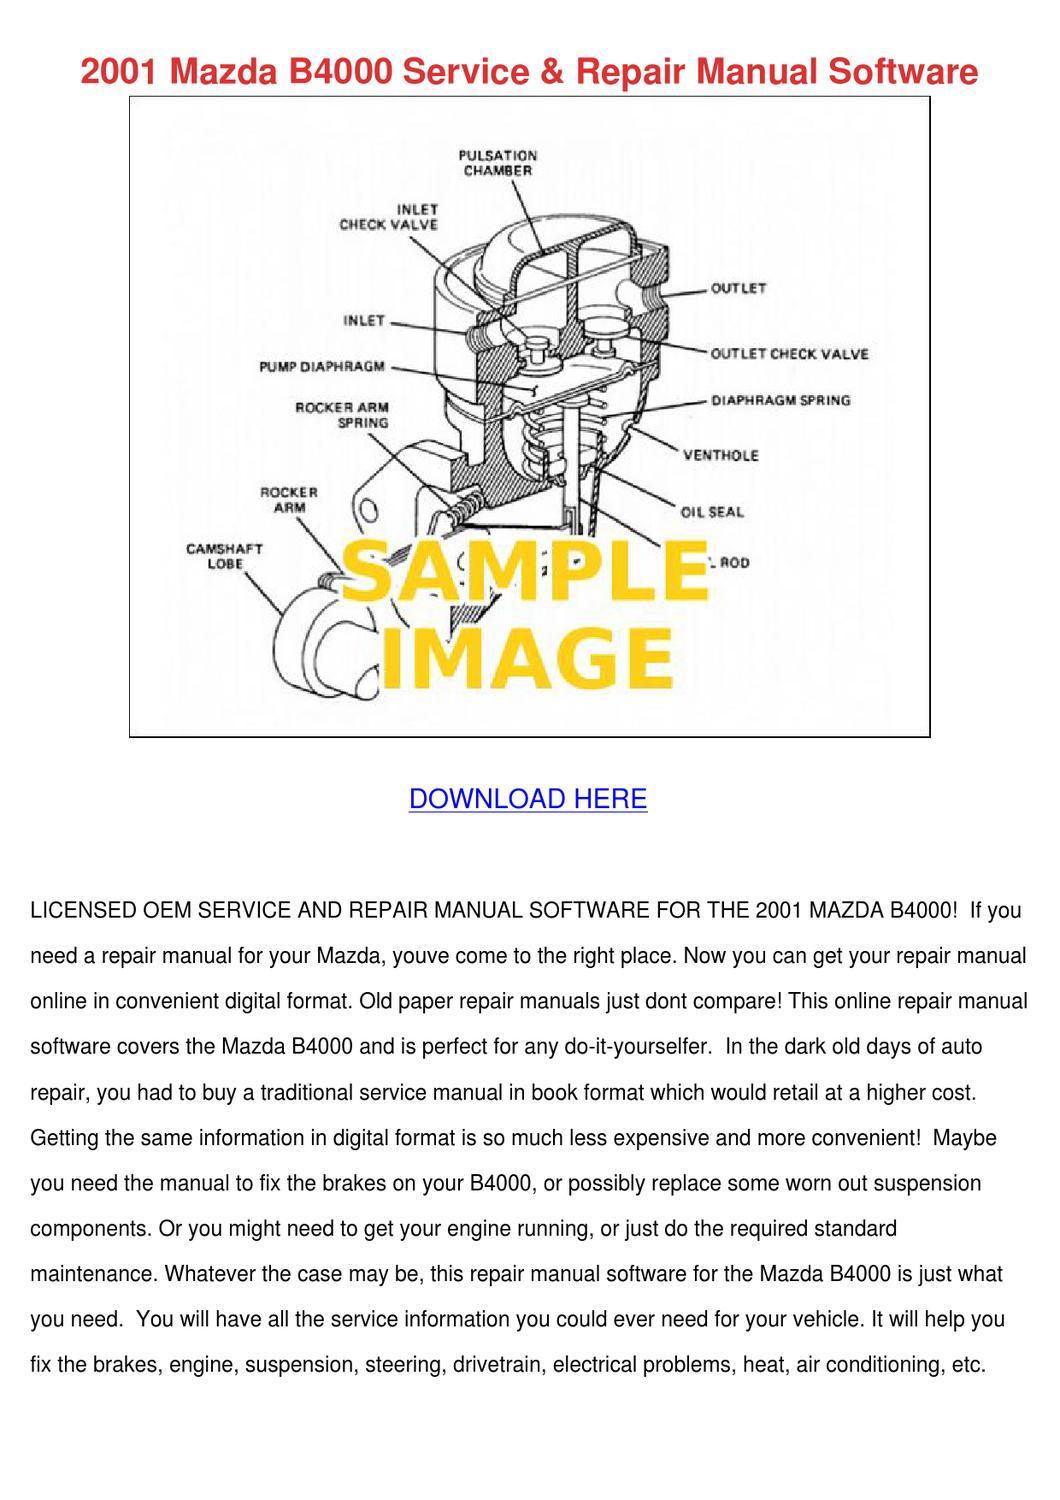 2001 Mazda B4000 Repair Manual Download